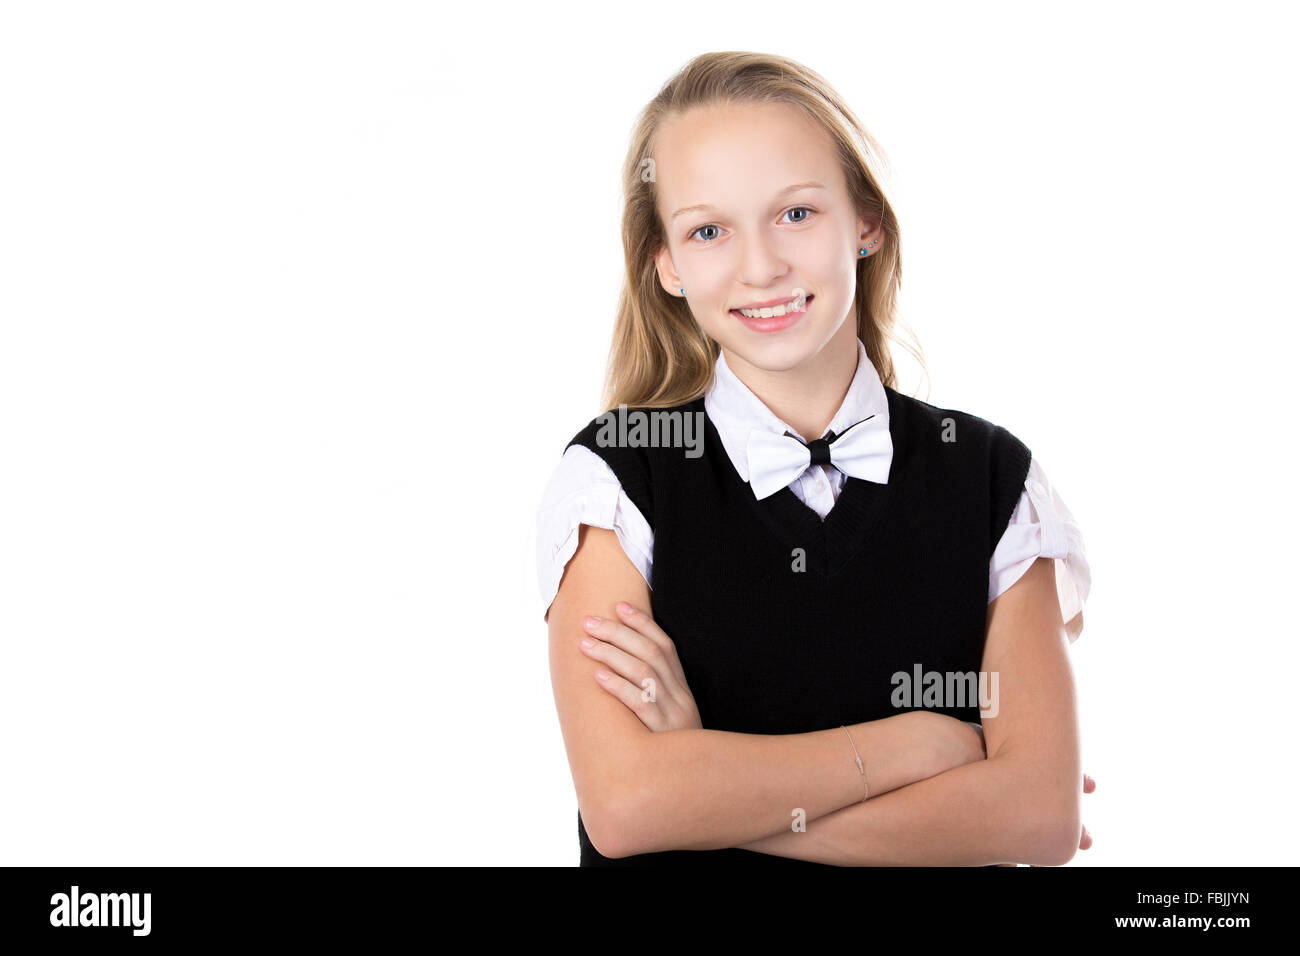 Ritratto di felice carino bella bionda schoolgirl vestita di nero e bianco abito formale e il filtro bow tie, tenendo le braccia incrociate Foto Stock